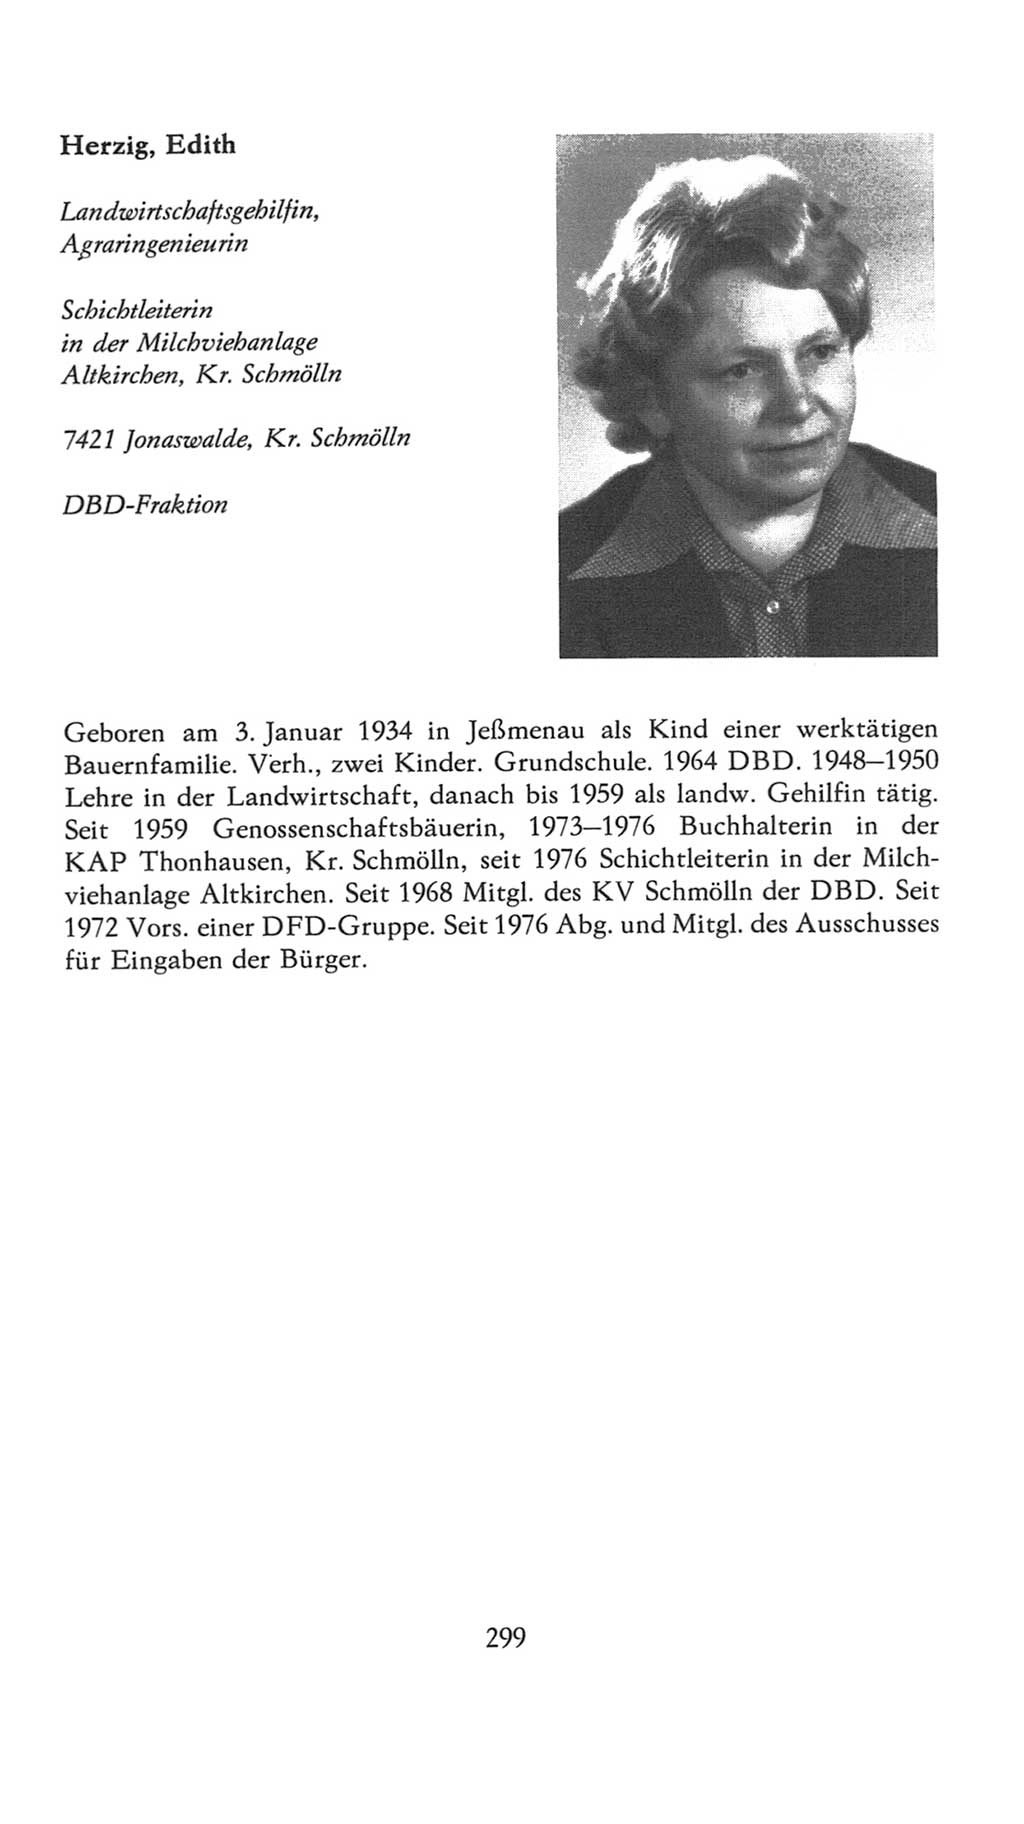 Volkskammer (VK) der Deutschen Demokratischen Republik (DDR), 7. Wahlperiode 1976-1981, Seite 299 (VK. DDR 7. WP. 1976-1981, S. 299)